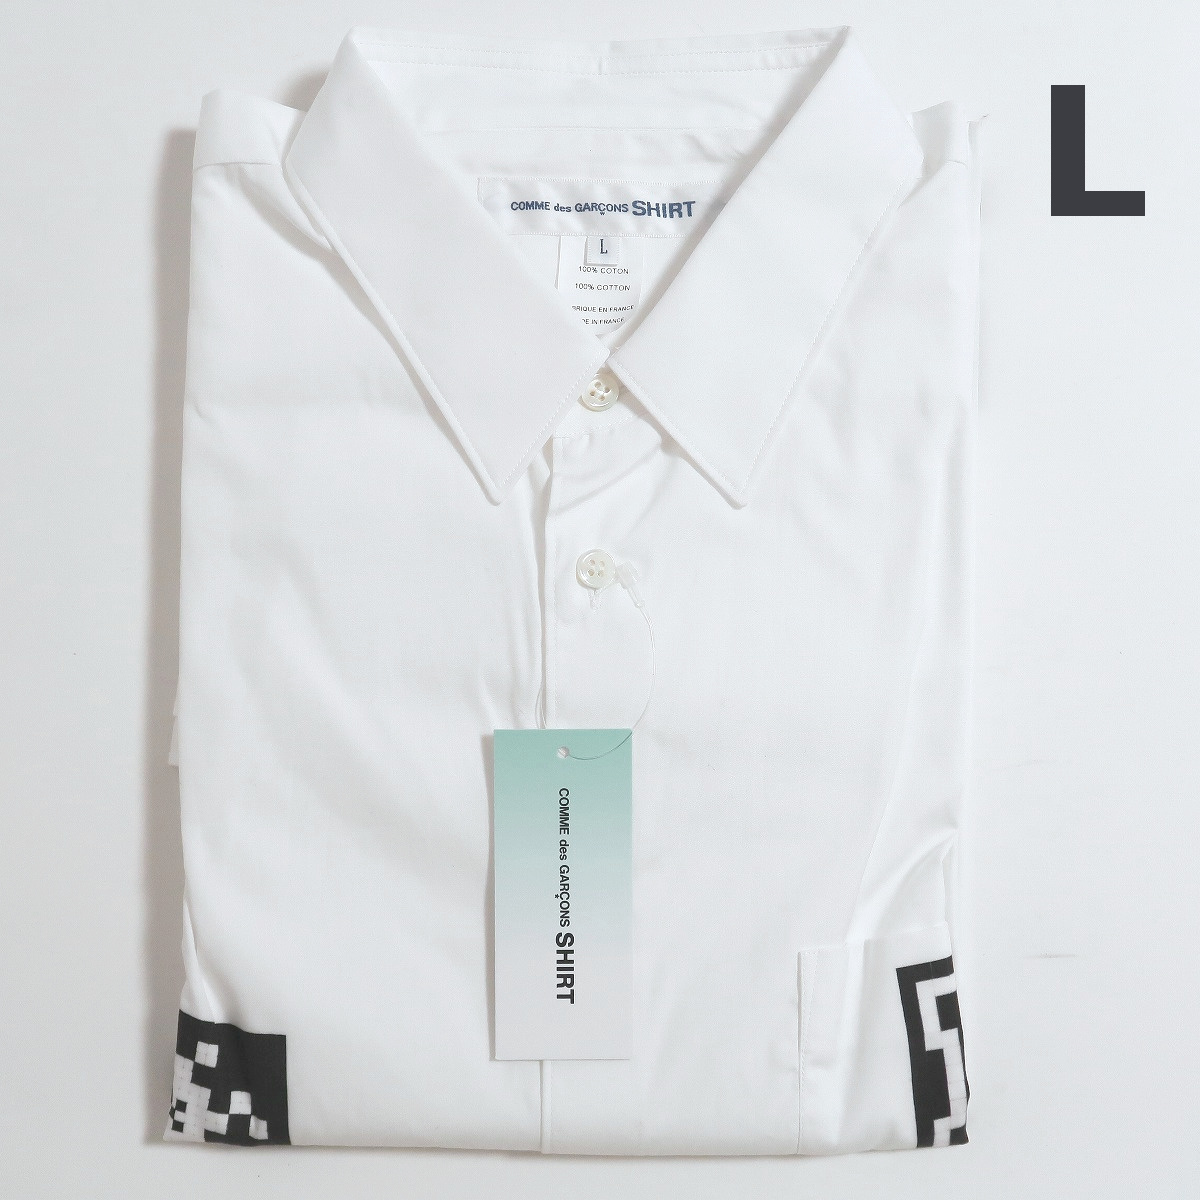 完璧 L 新品 Shirt GARCONS des COMME フランス製 長袖 シャツ 白 ポイント インベーダー シャツ コムデギャルソン Lサイズ以上